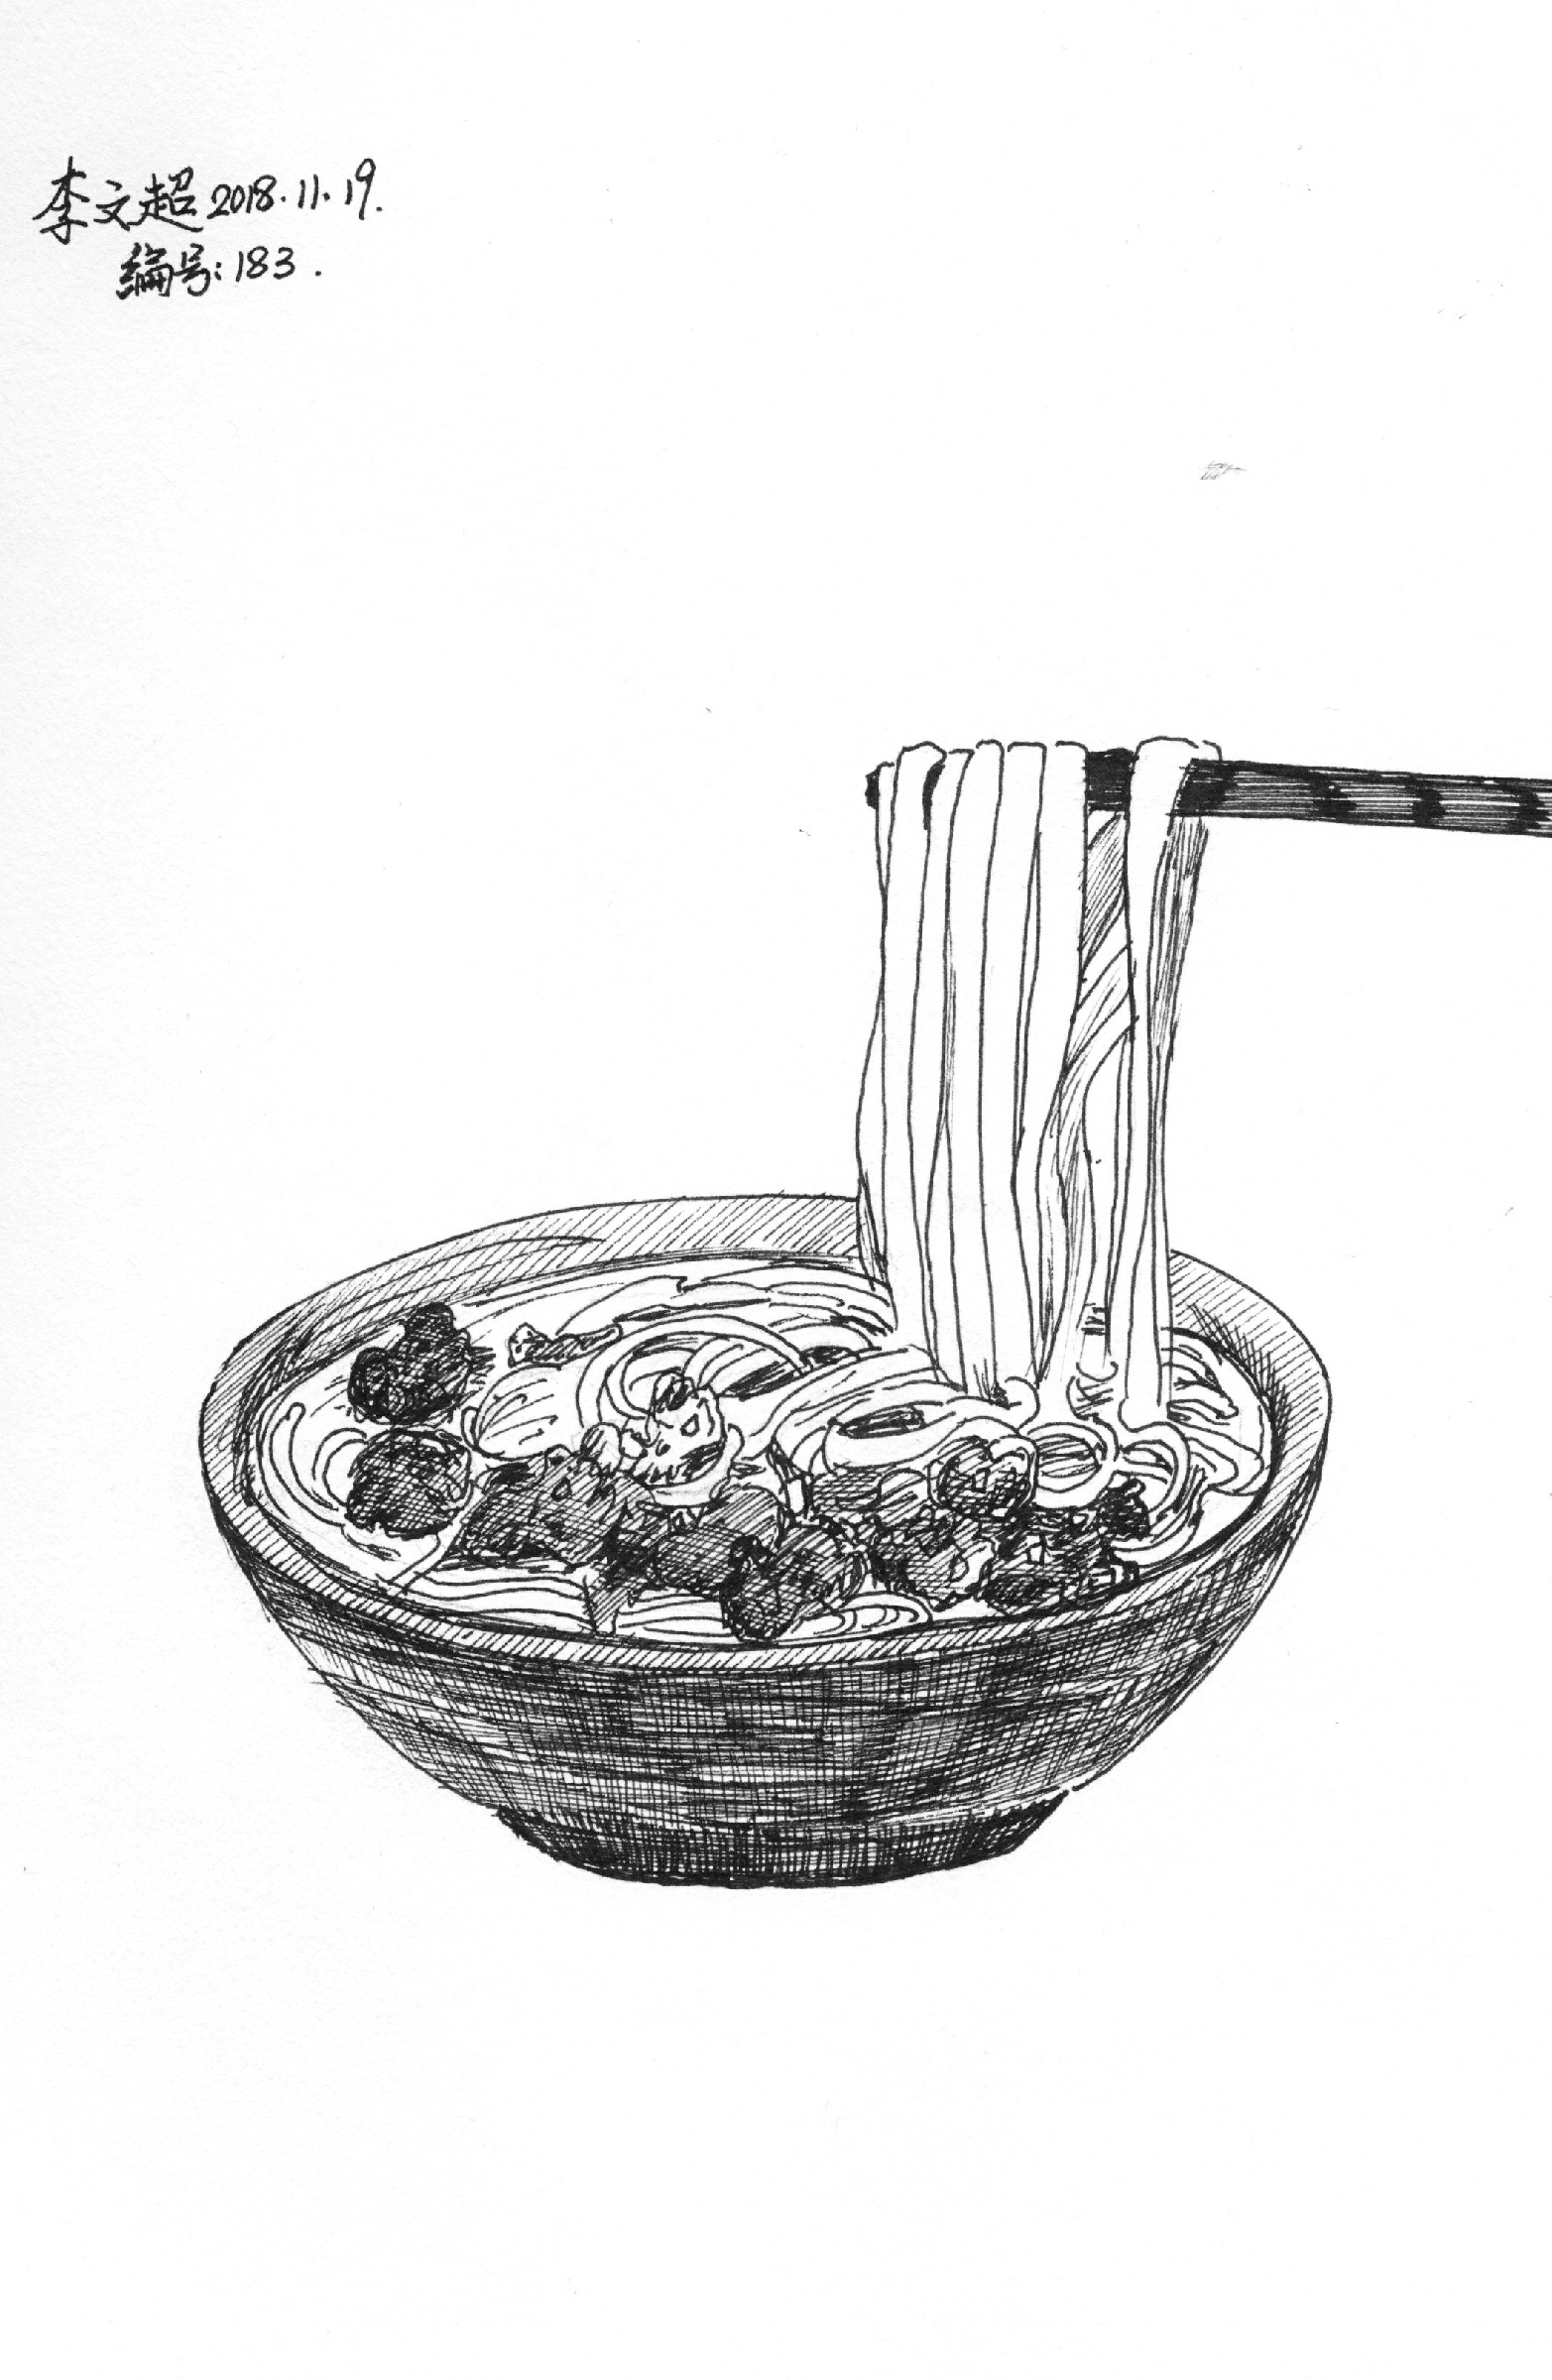 【涂鸦】李文超的钢笔速写,一碗普通的面,甚至有点黑暗料理的感觉